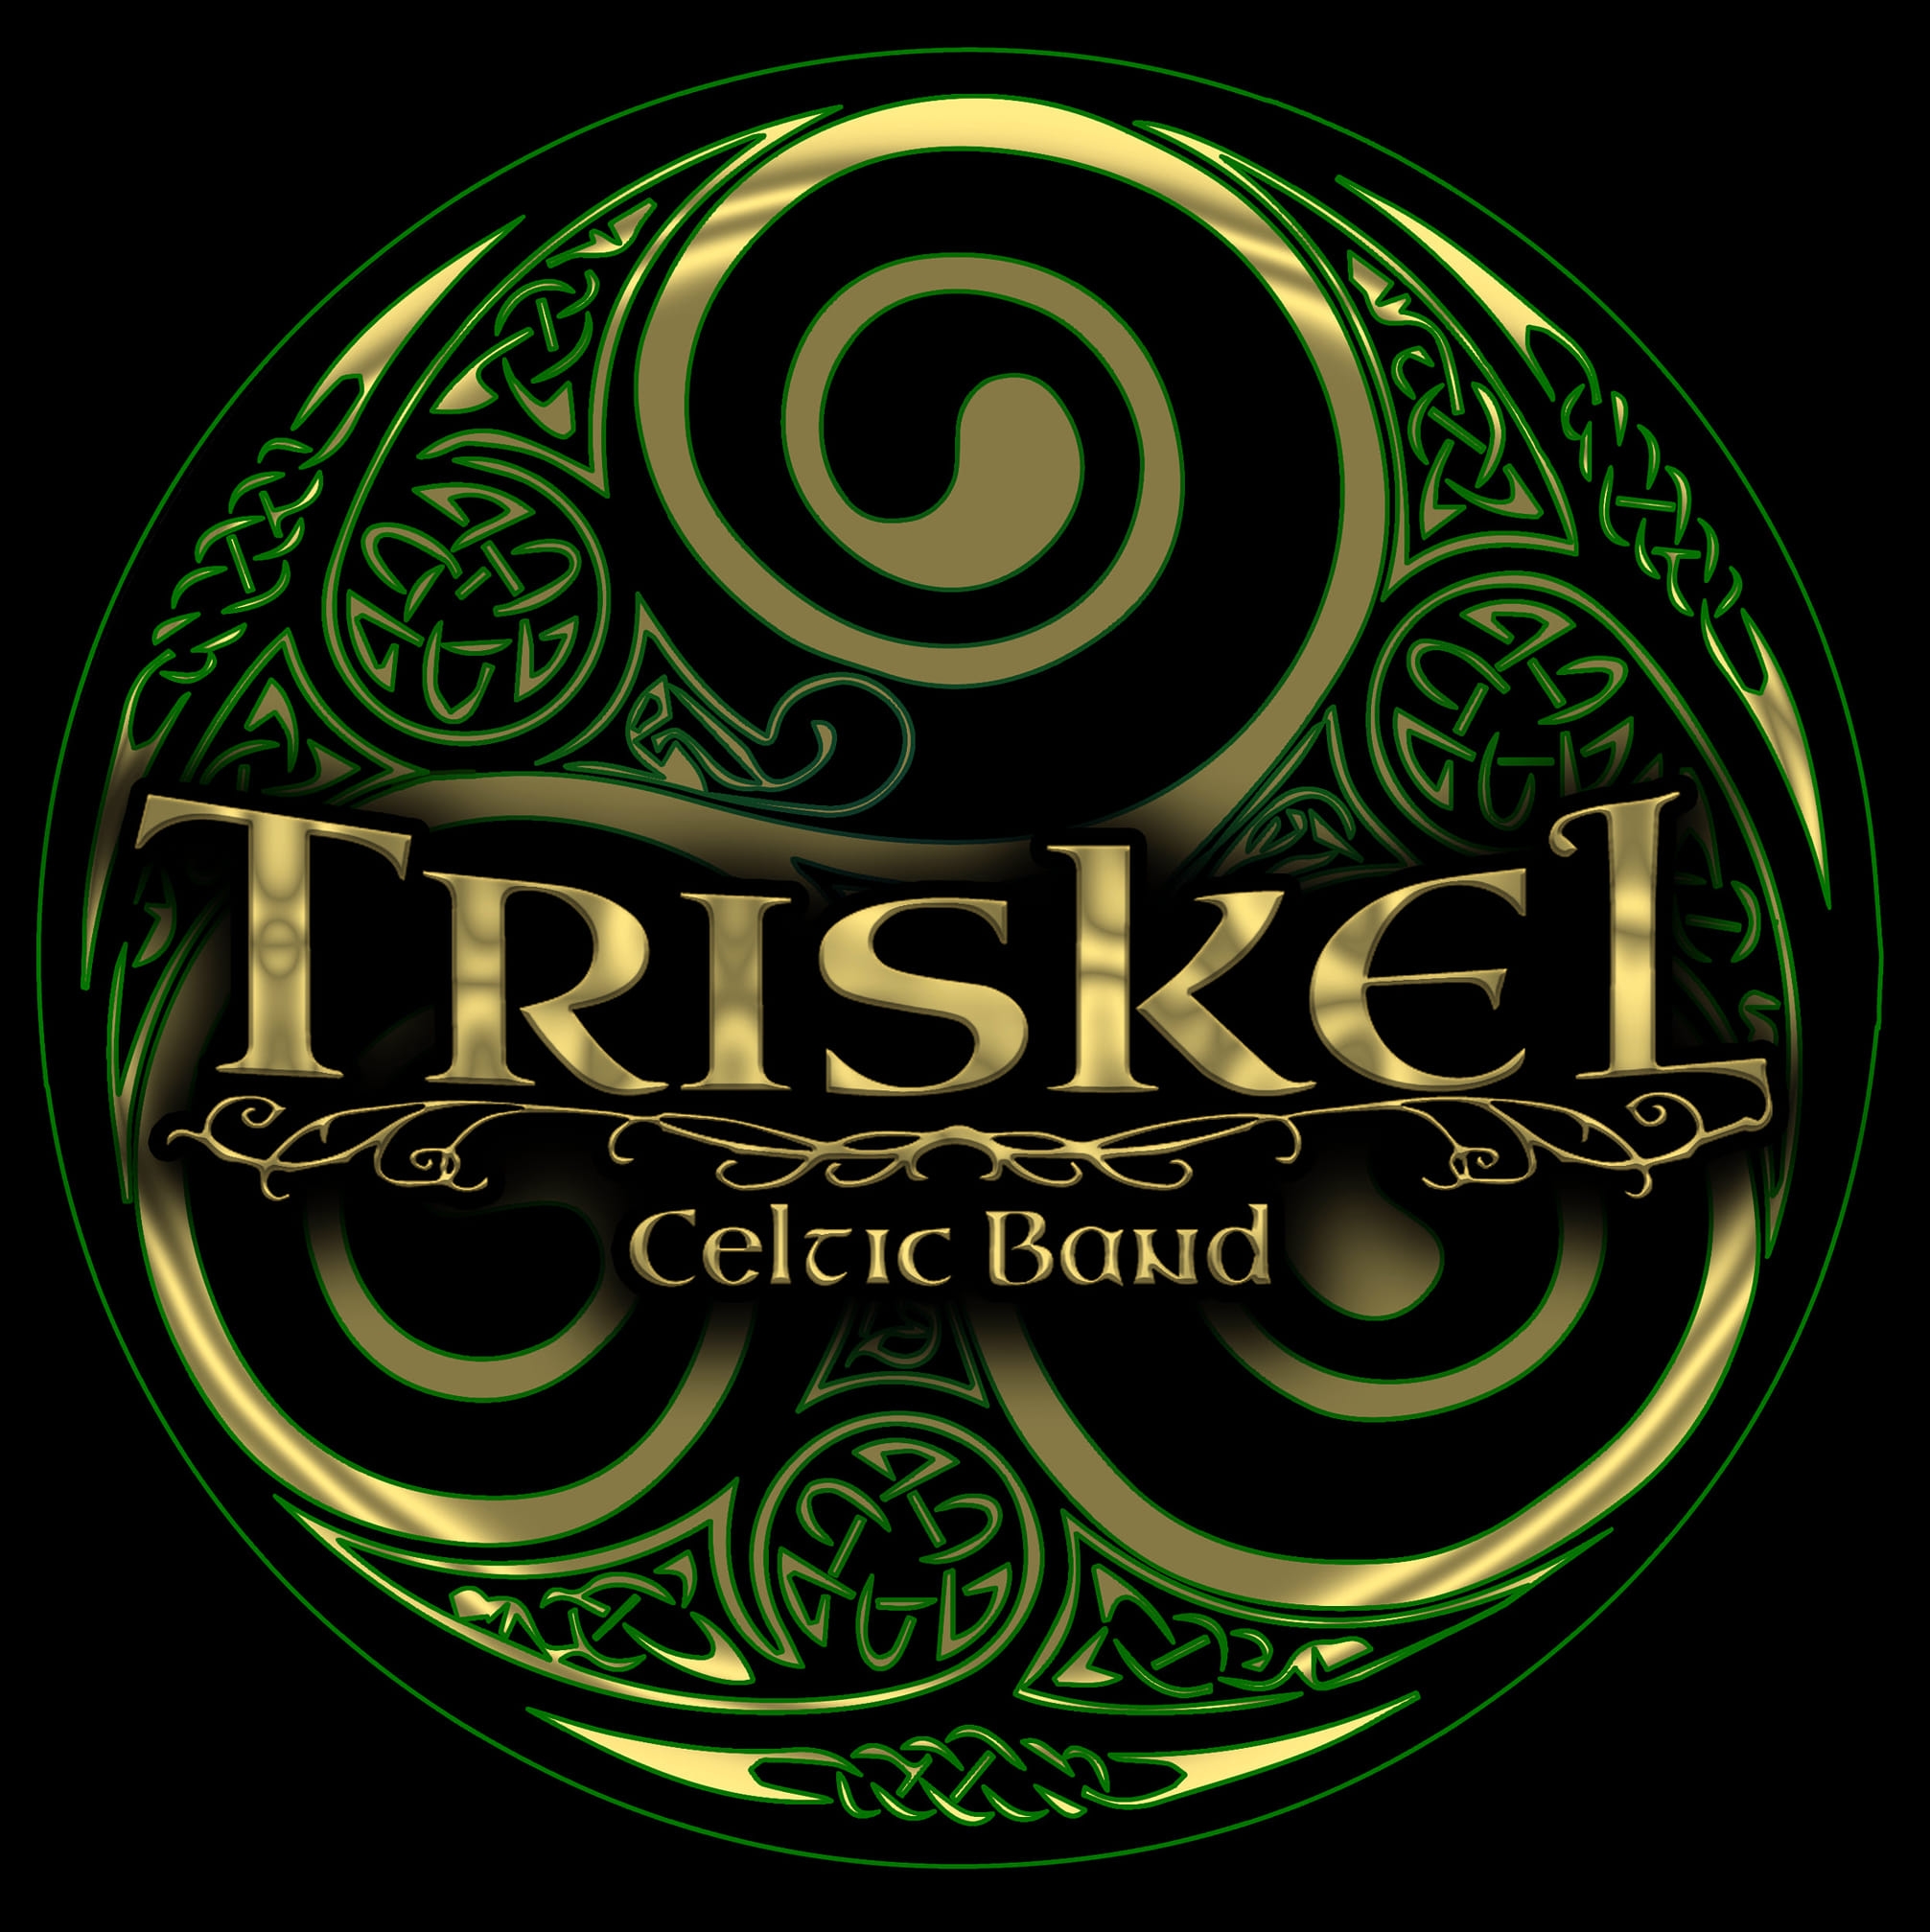 Triskel Celtic Band